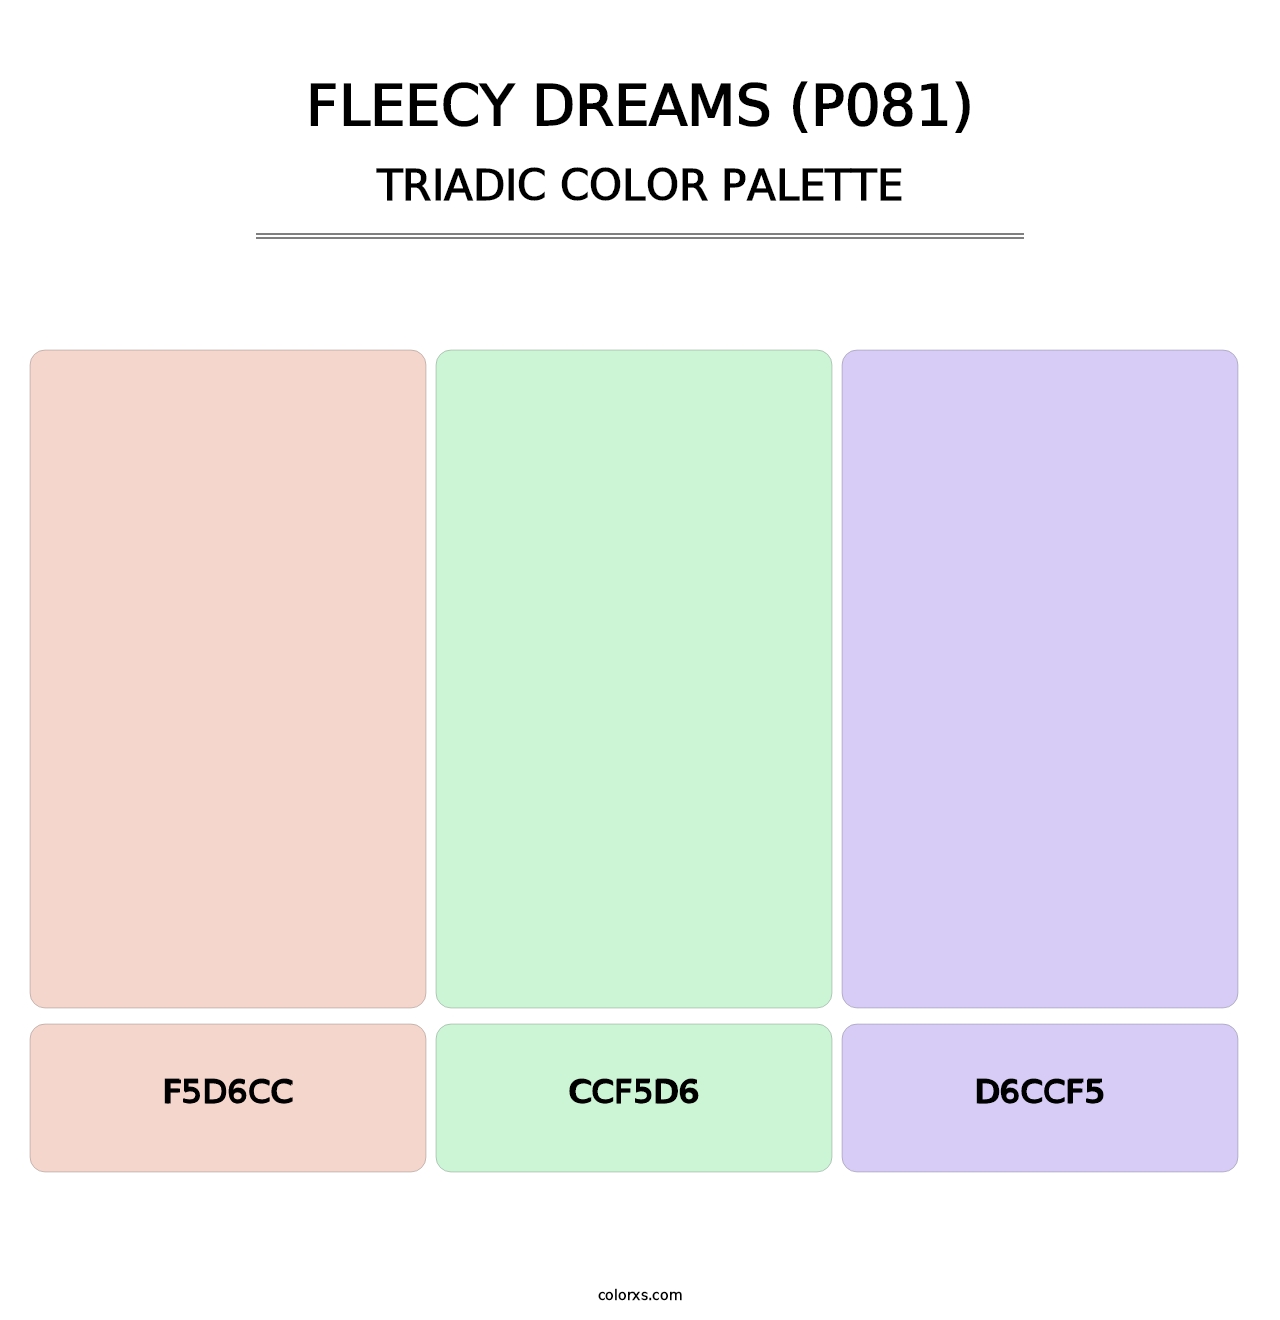 Fleecy Dreams (P081) - Triadic Color Palette